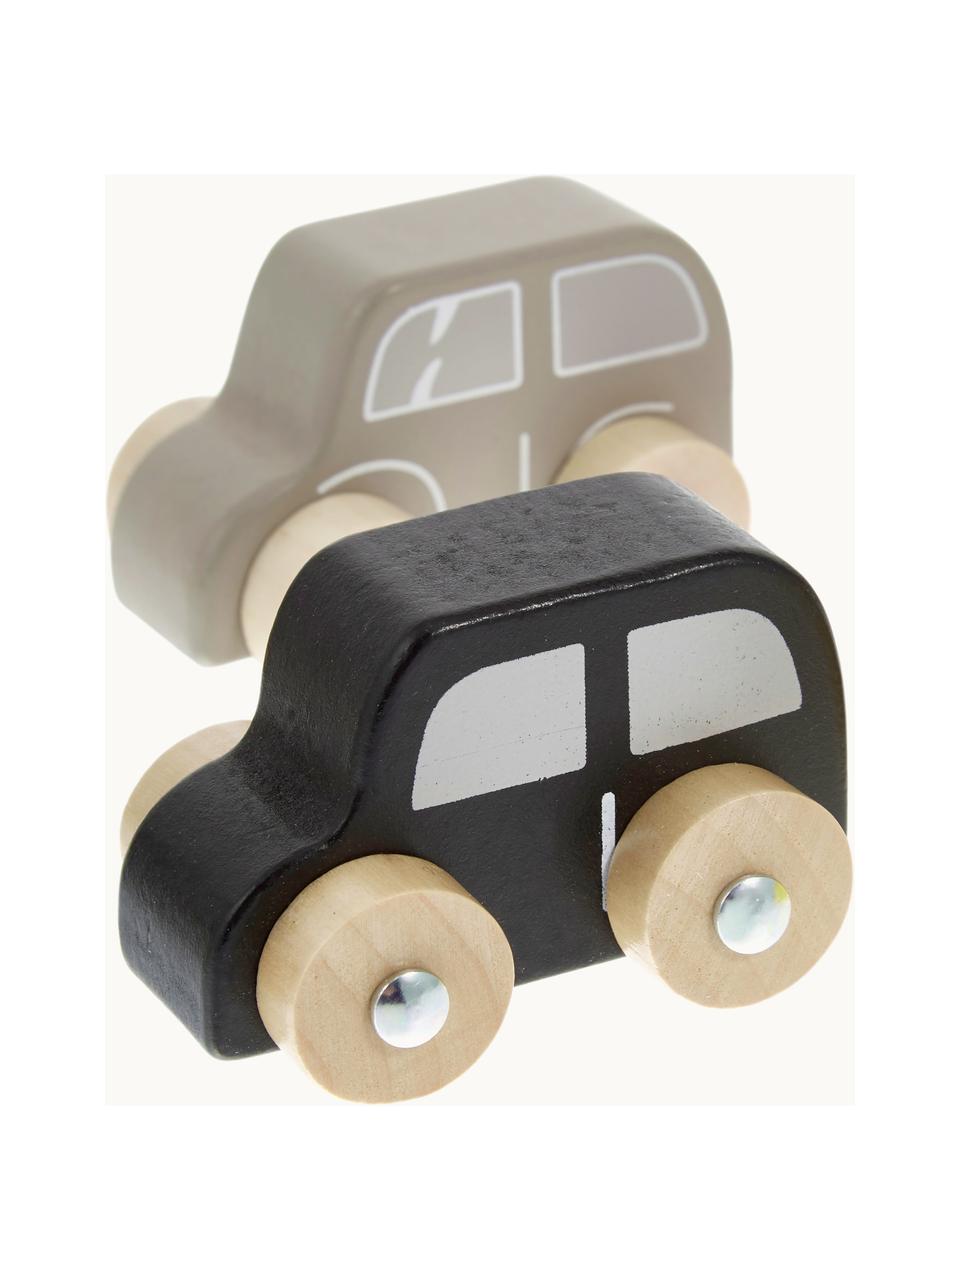 Spielzeugautos Car, 6er-Set, Mitteldichte Holzfaserplatte (MDF), Lotusbaumholz, Bunt, B 20 x H 23 cm